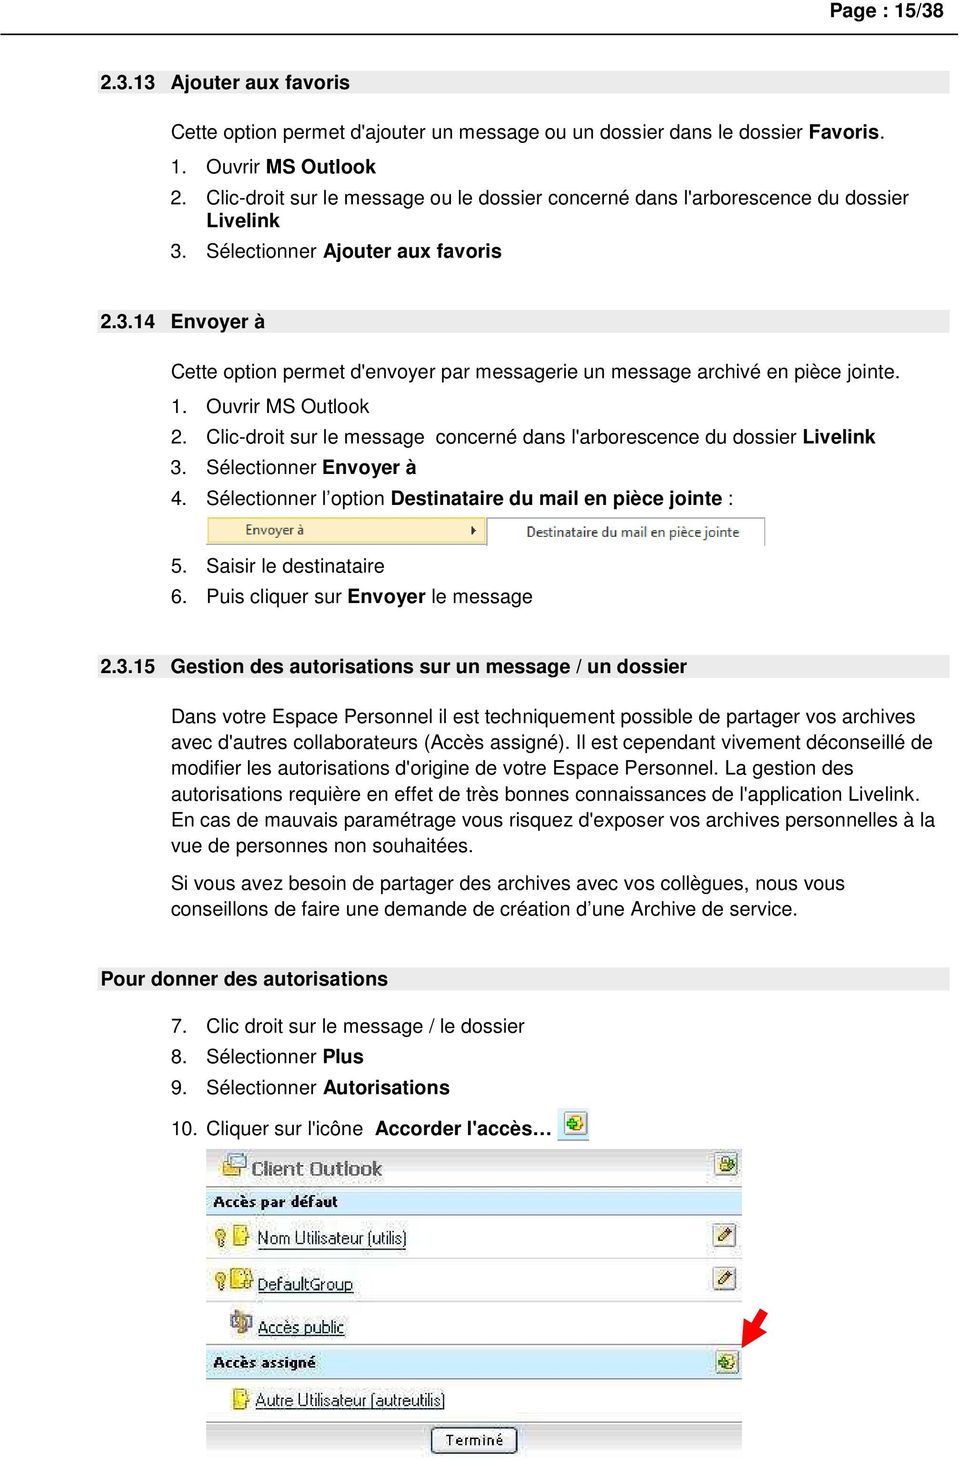 1. Ouvrir MS Outlook 2. Clic-droit sur le message concerné dans l'arborescence du dossier Livelink 3. Sélectionner Envoyer à 4. Sélectionner l option Destinataire du mail en pièce jointe : 5.